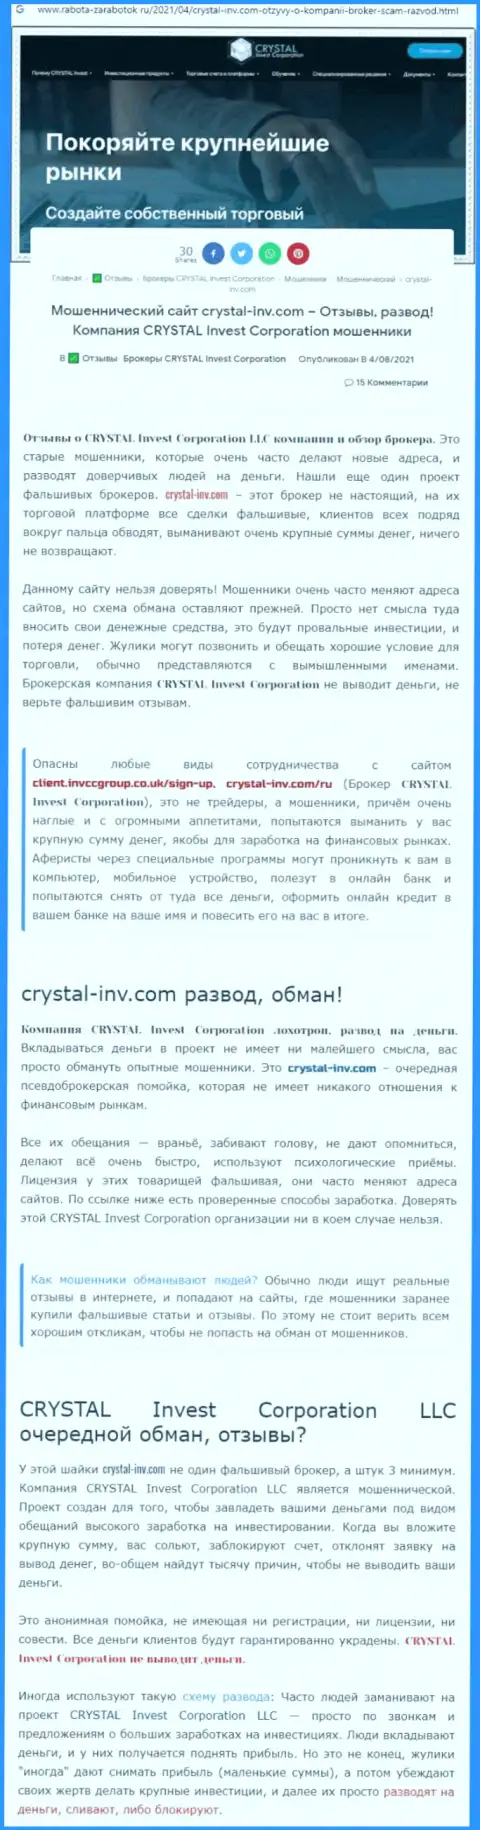 Материал, разоблачающий организацию Crystal Invest Corporation, позаимствованный с сайта с обзорами проделок разных организаций